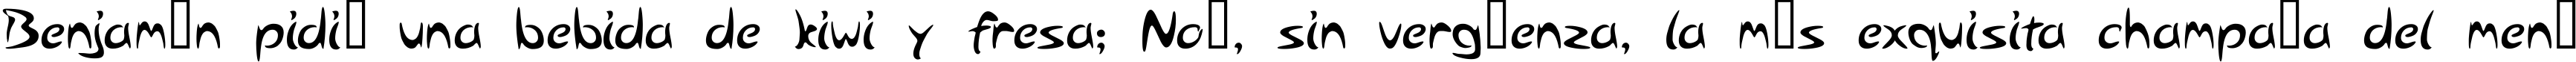 Пример написания шрифтом Arabolical 1 текста на испанском